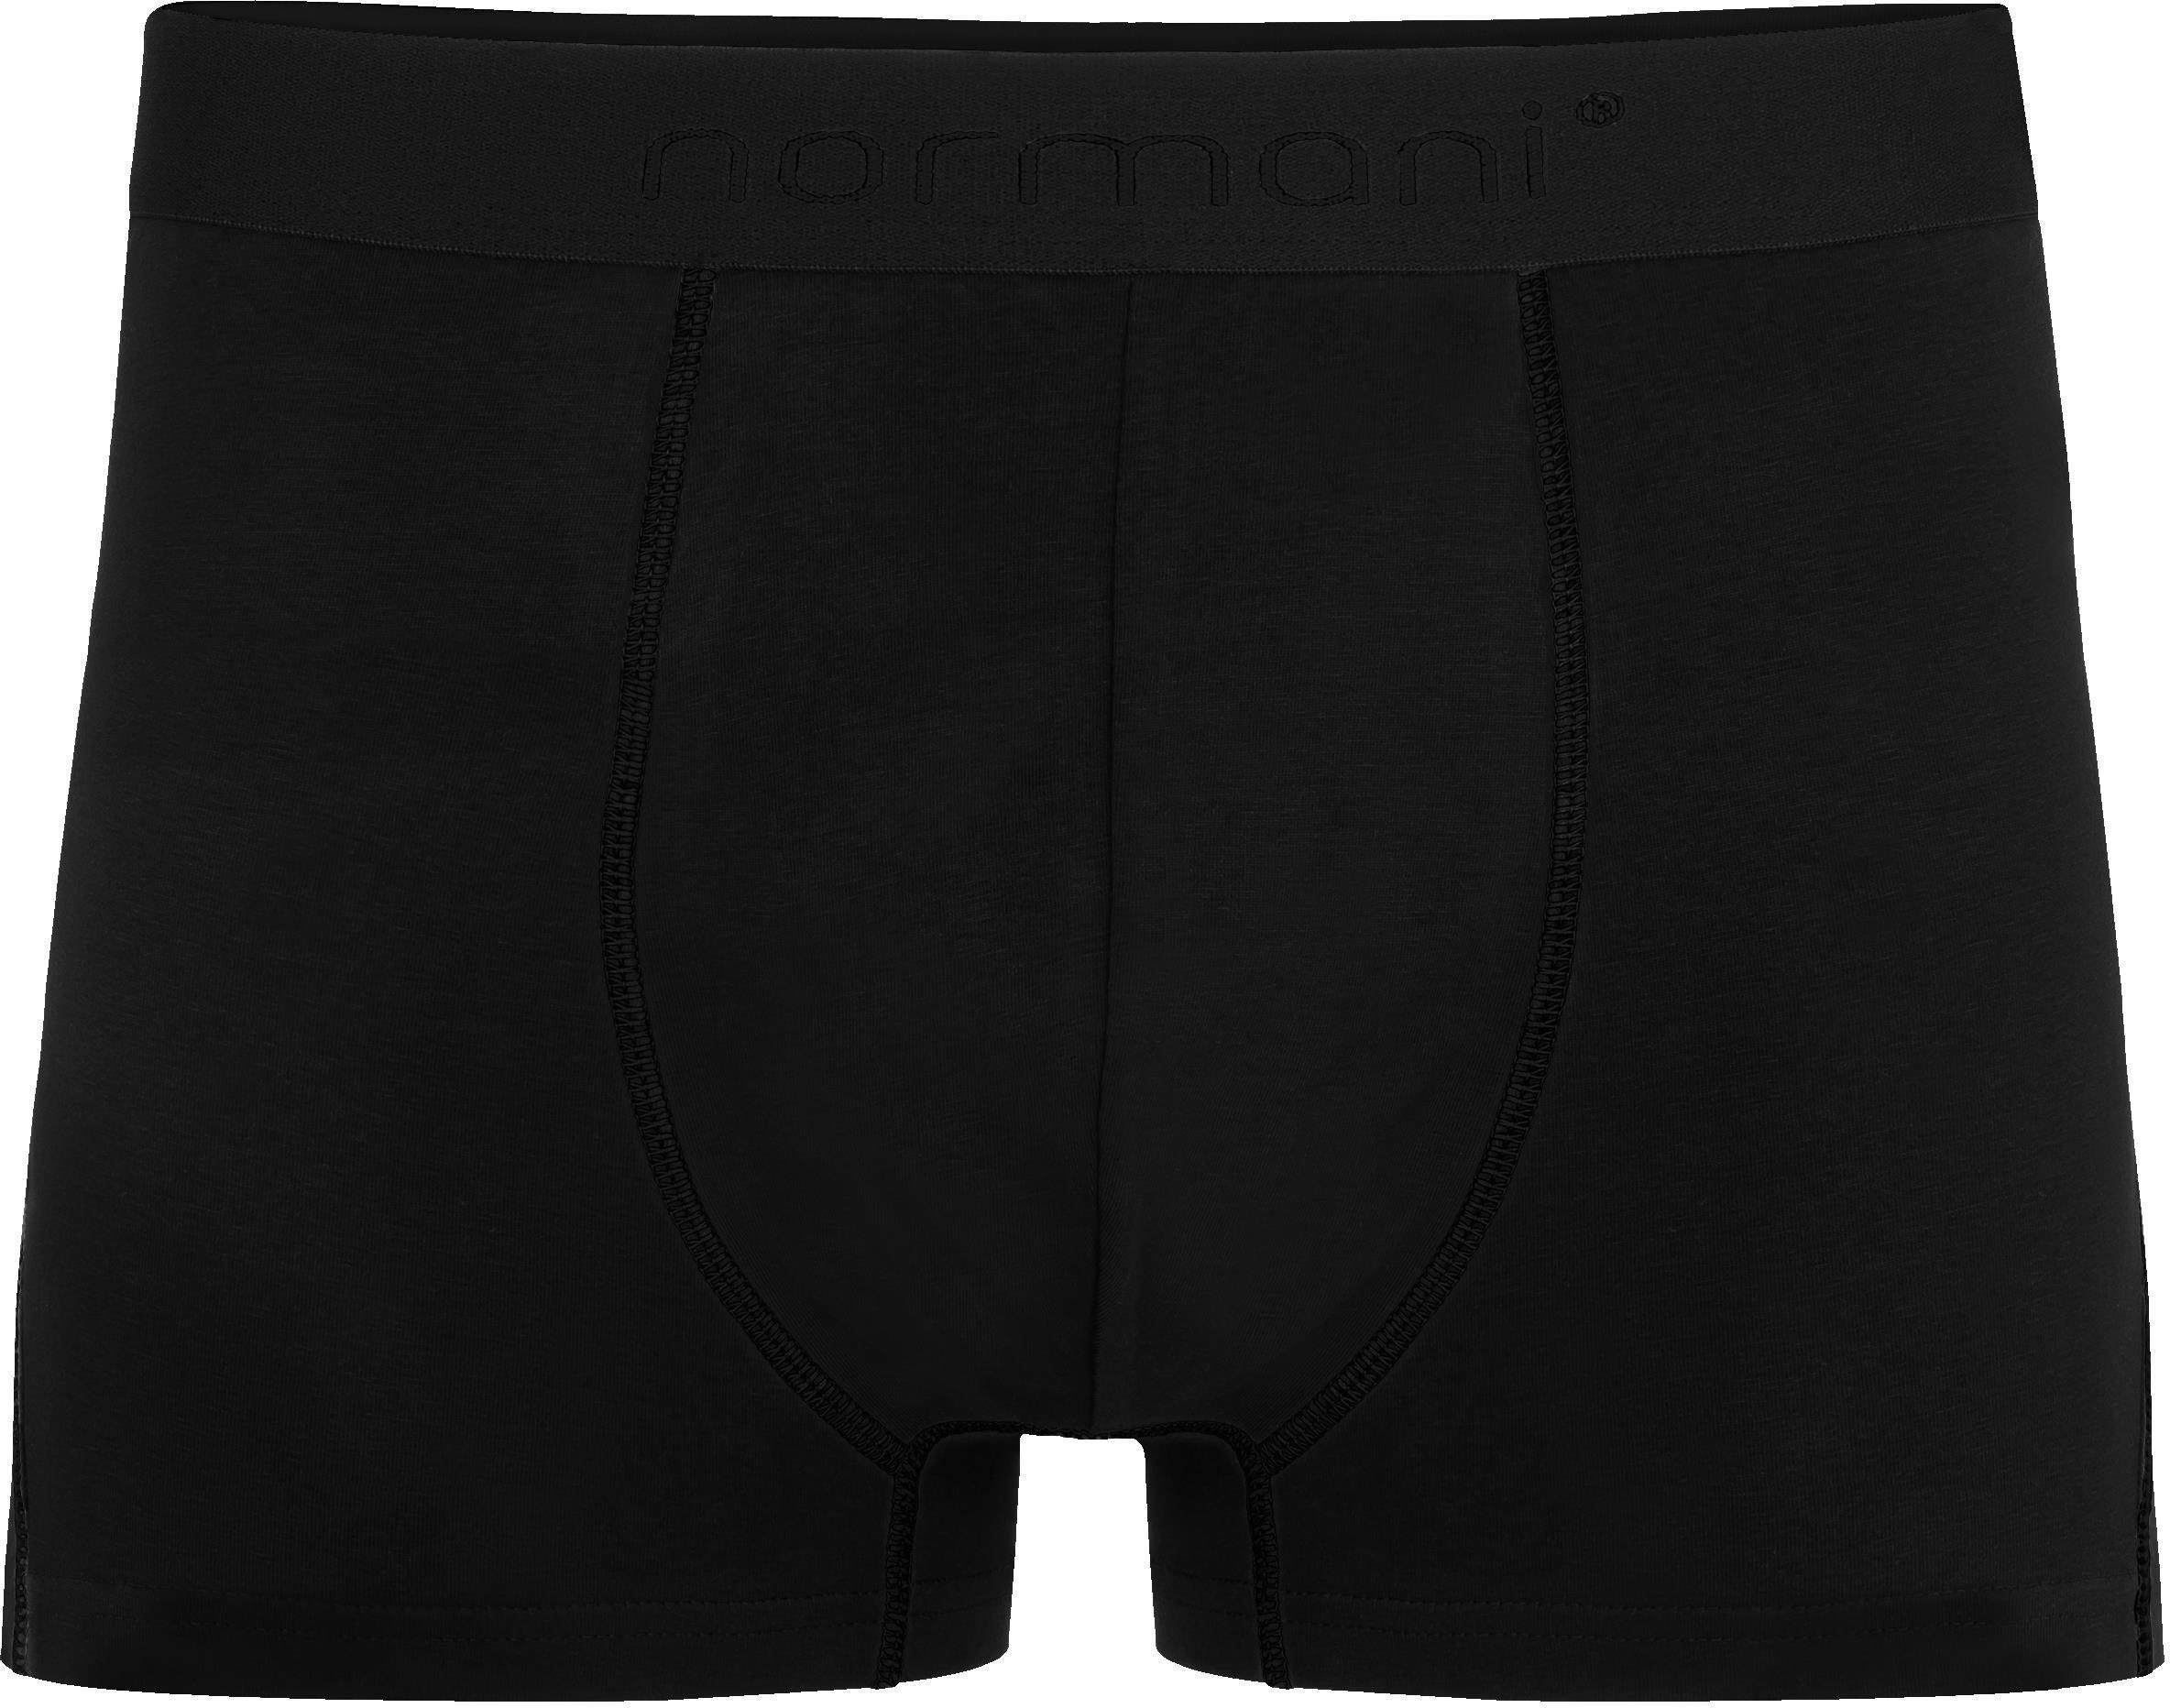 Dunkelblau/Grau/Schwarz atmungsaktiver Unterhose 6x normani für aus Boxershorts Baumwoll-Boxershorts Herren Männer Baumwolle